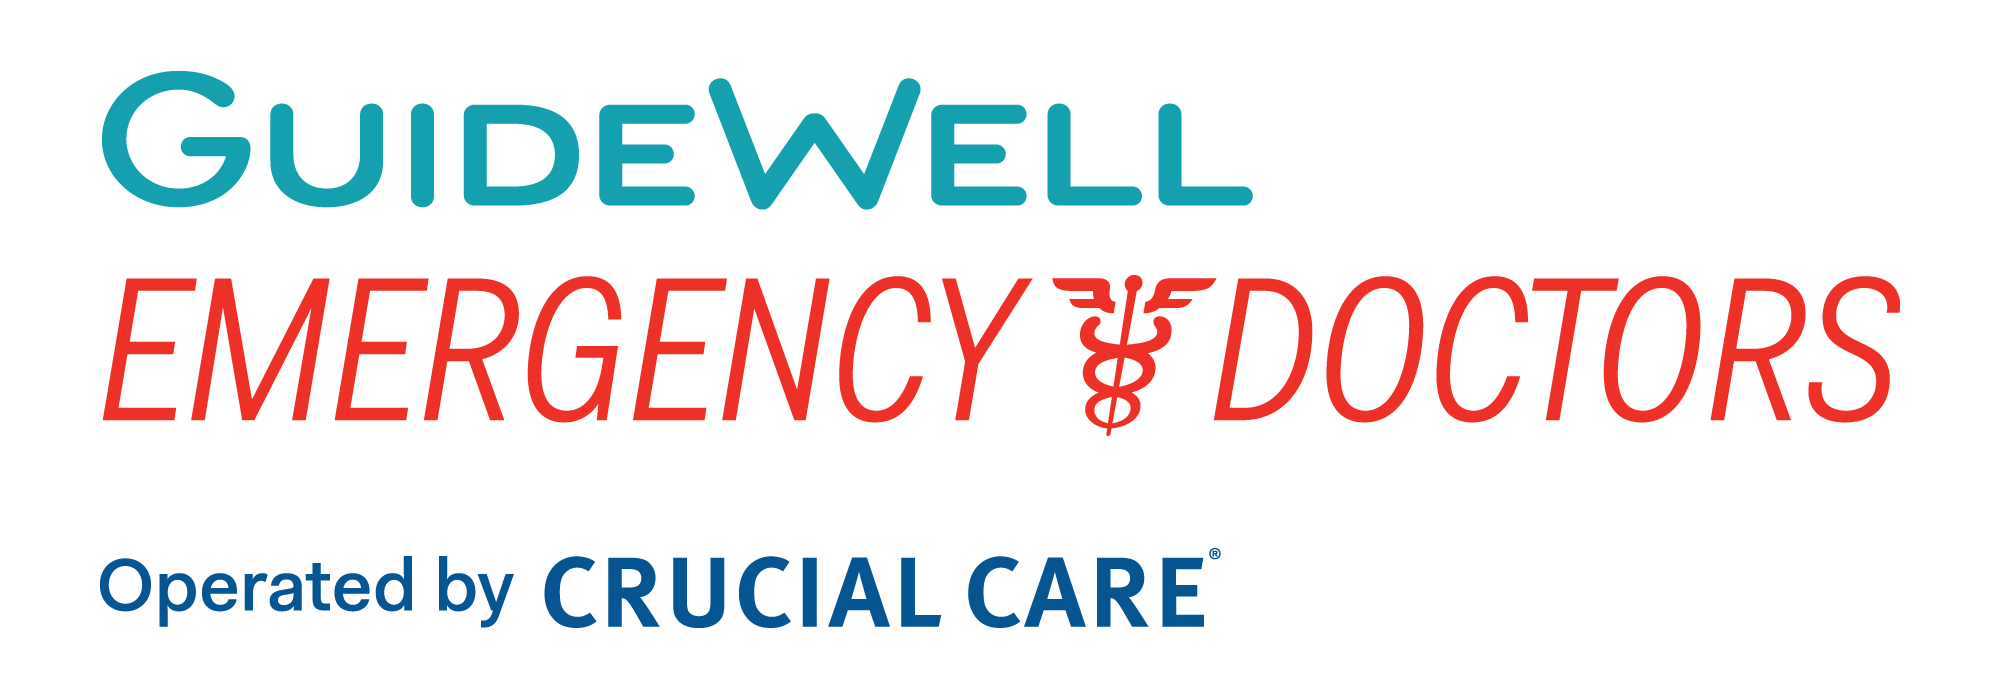 Guidewell Emergency Doctors - St. Petersburg Logo